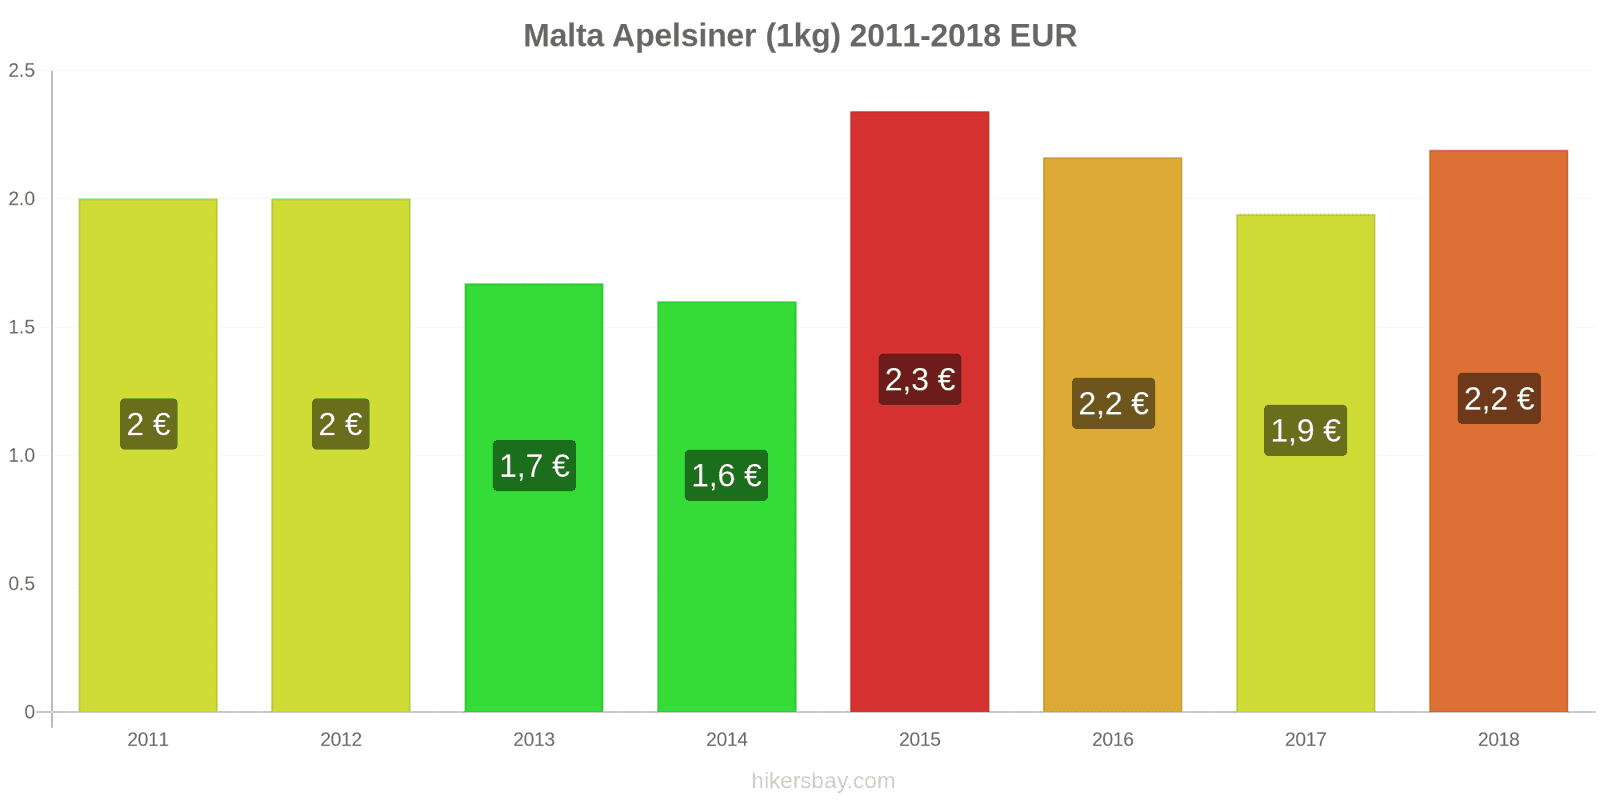 Malta prisändringar Apelsiner (1kg) hikersbay.com